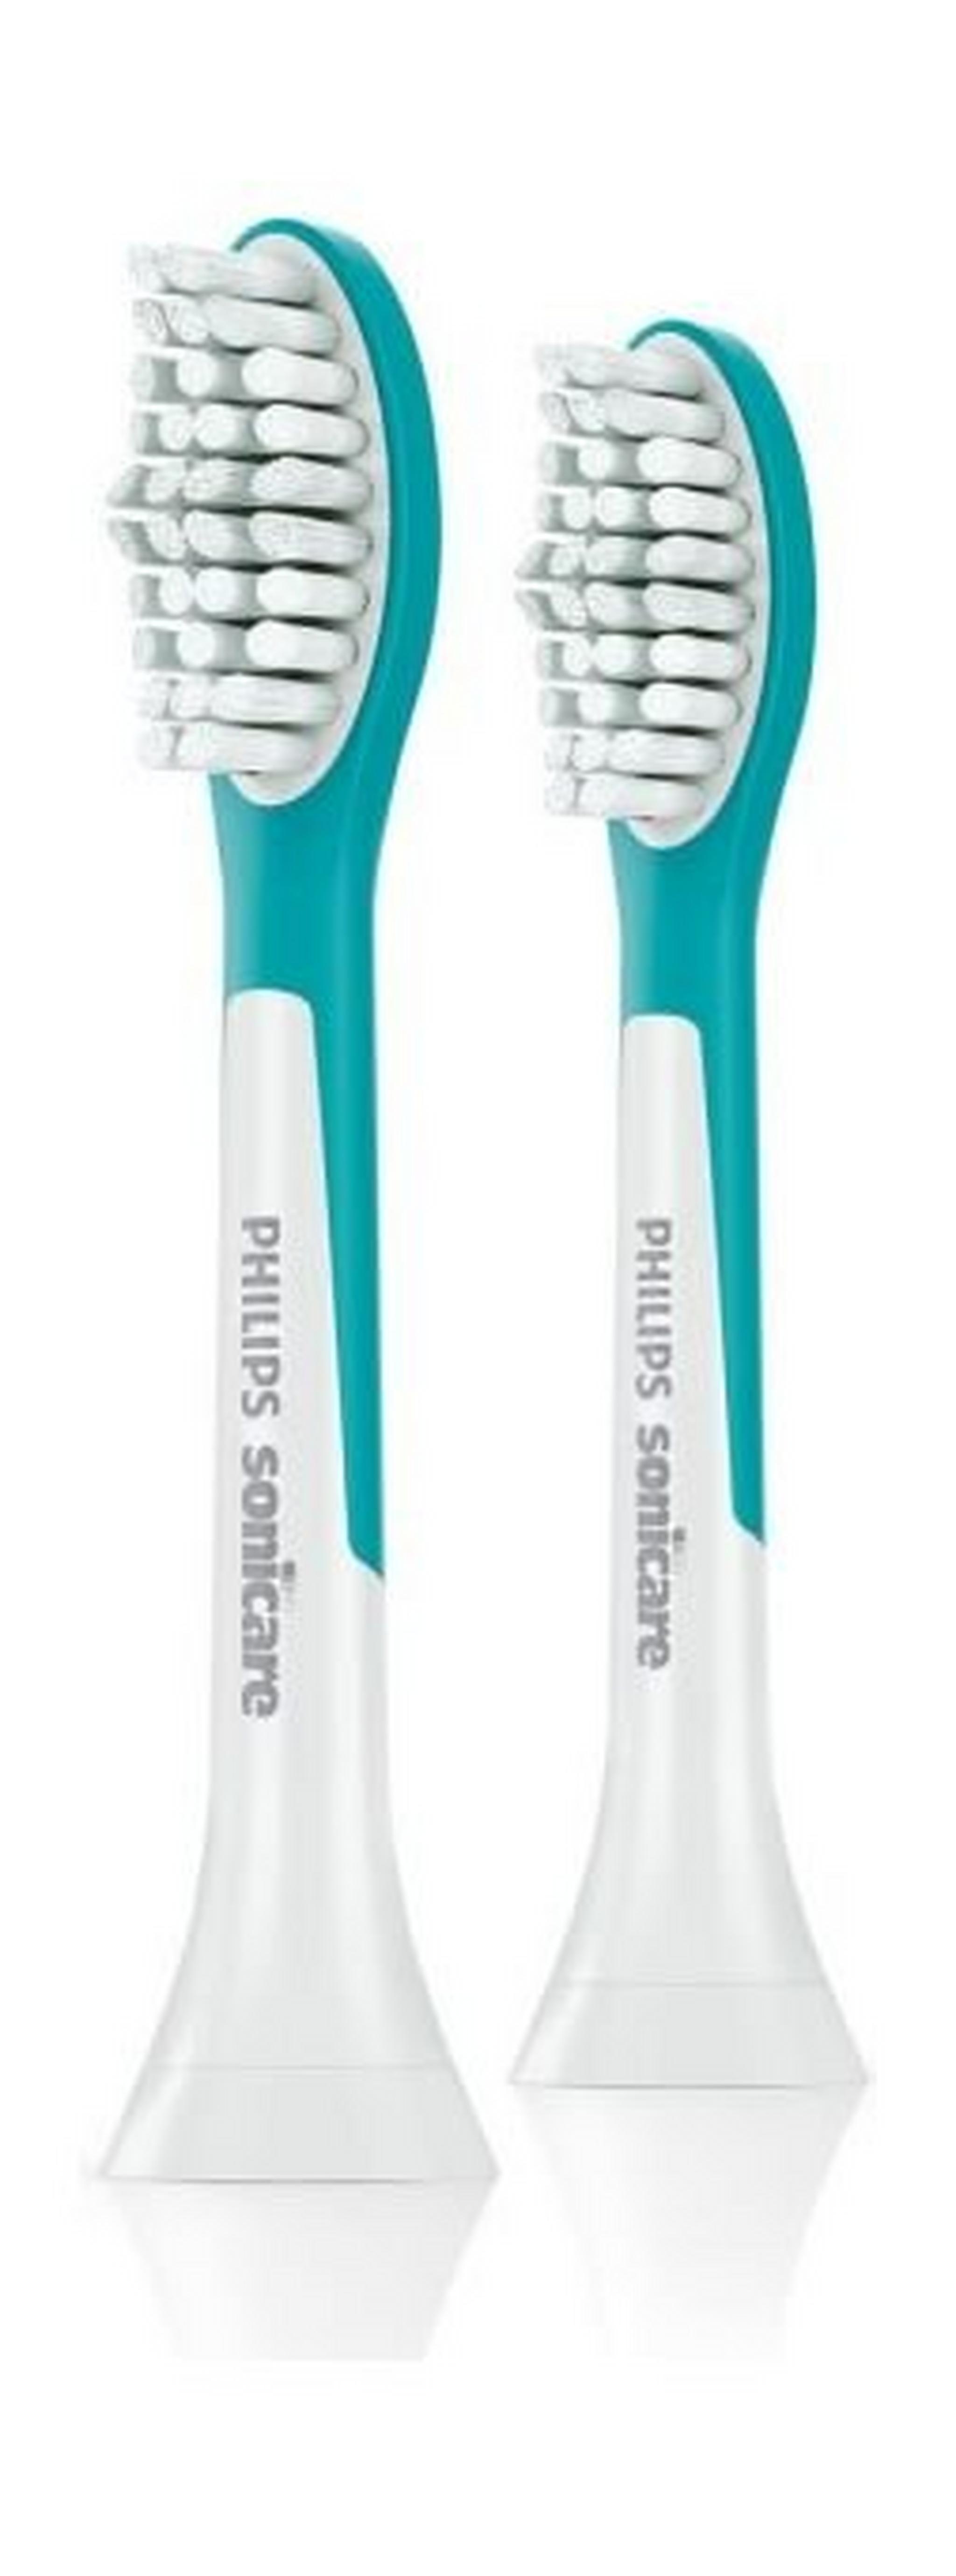 Philips Kids Standard Sonic Toothbrush Heads